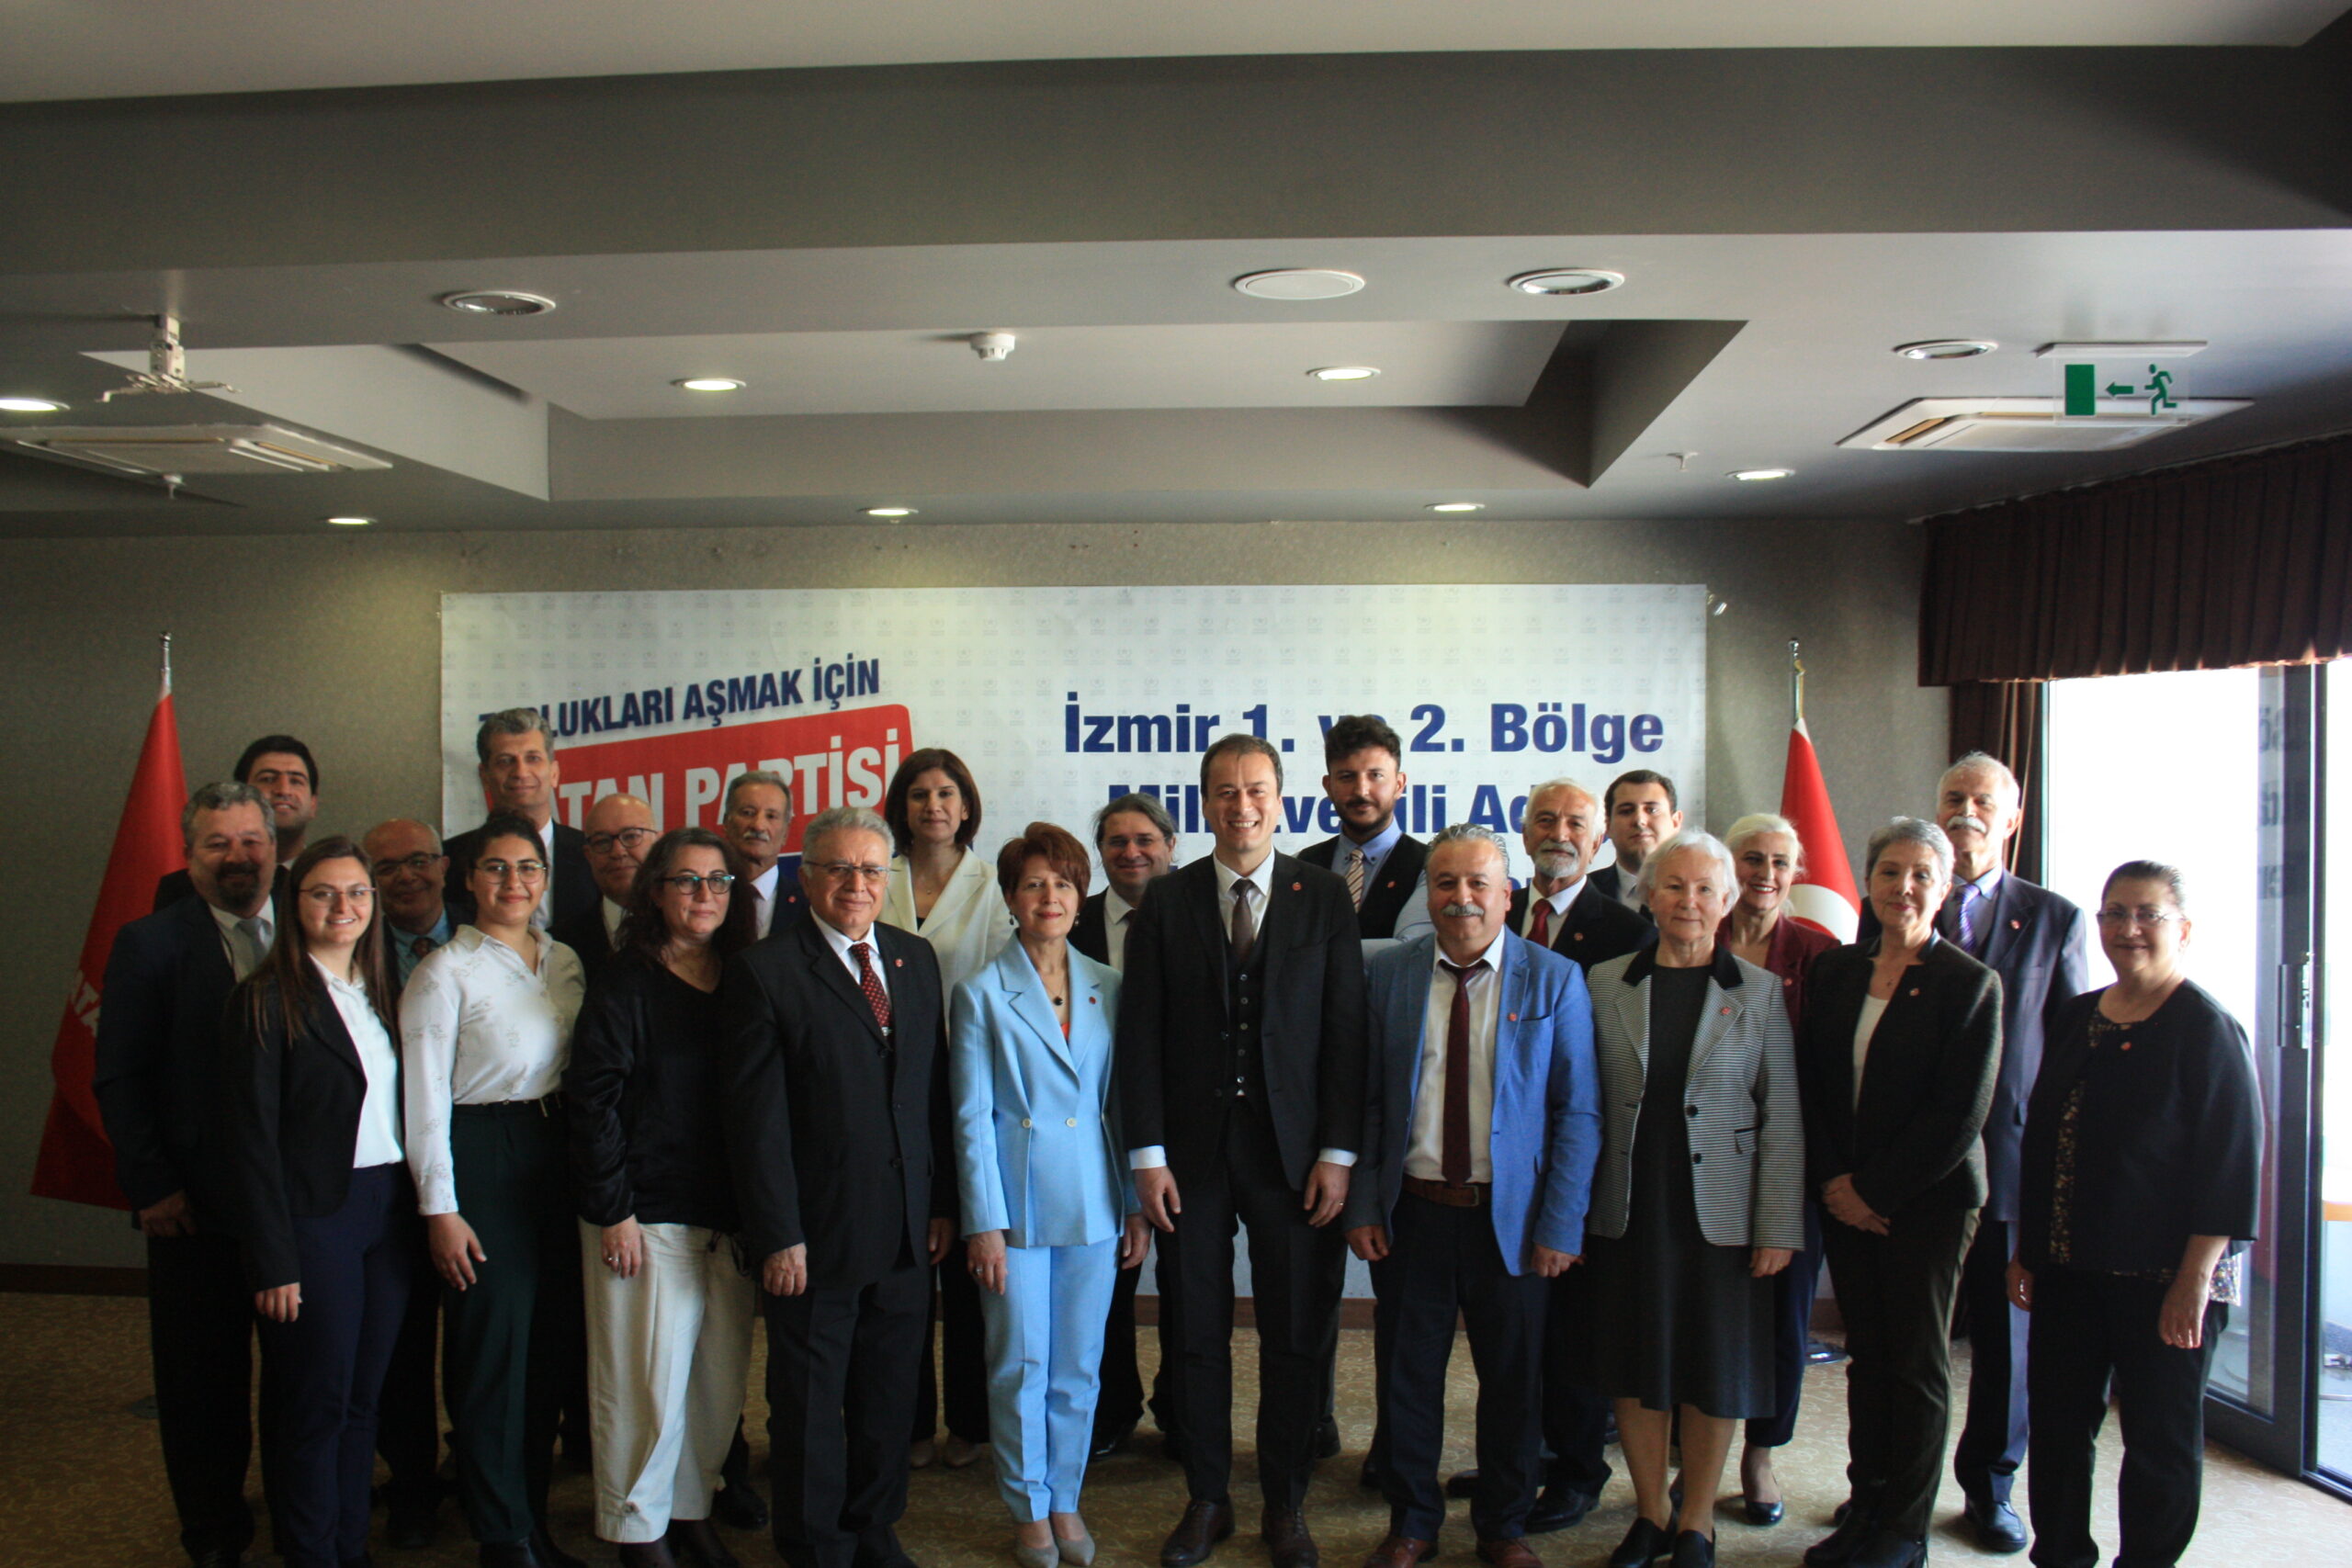 İzmir’de Vatan Partisi’nin 28. dönem milletvekili aday tanıtım töreninin coşkusu vardı.